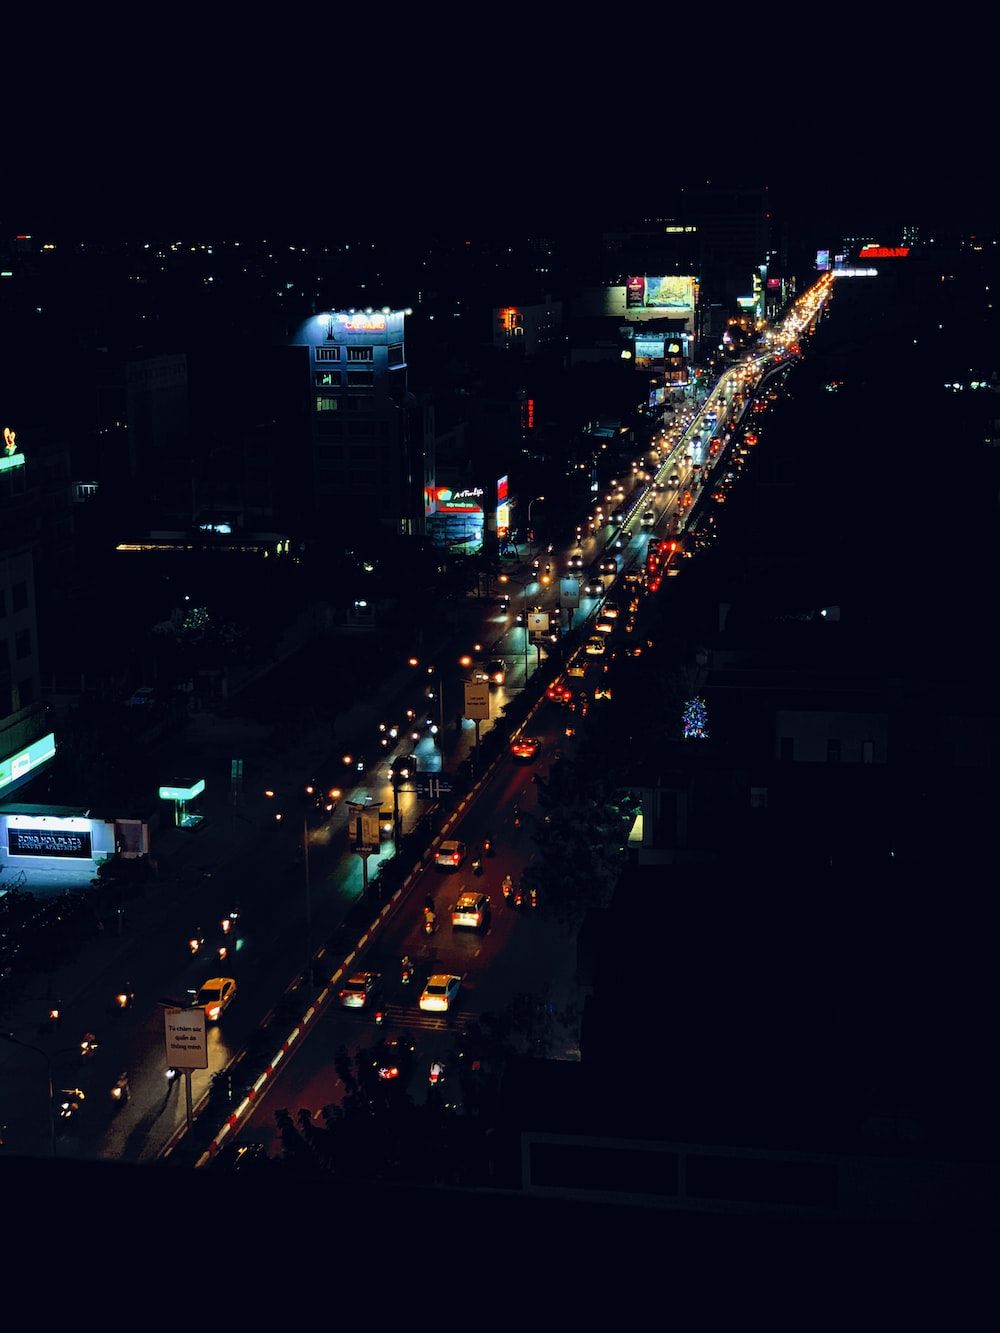  Stadt Hintergrundbild 1000x1333. Foto zum Thema Stadt mit hochhäusern während der nachtzeit